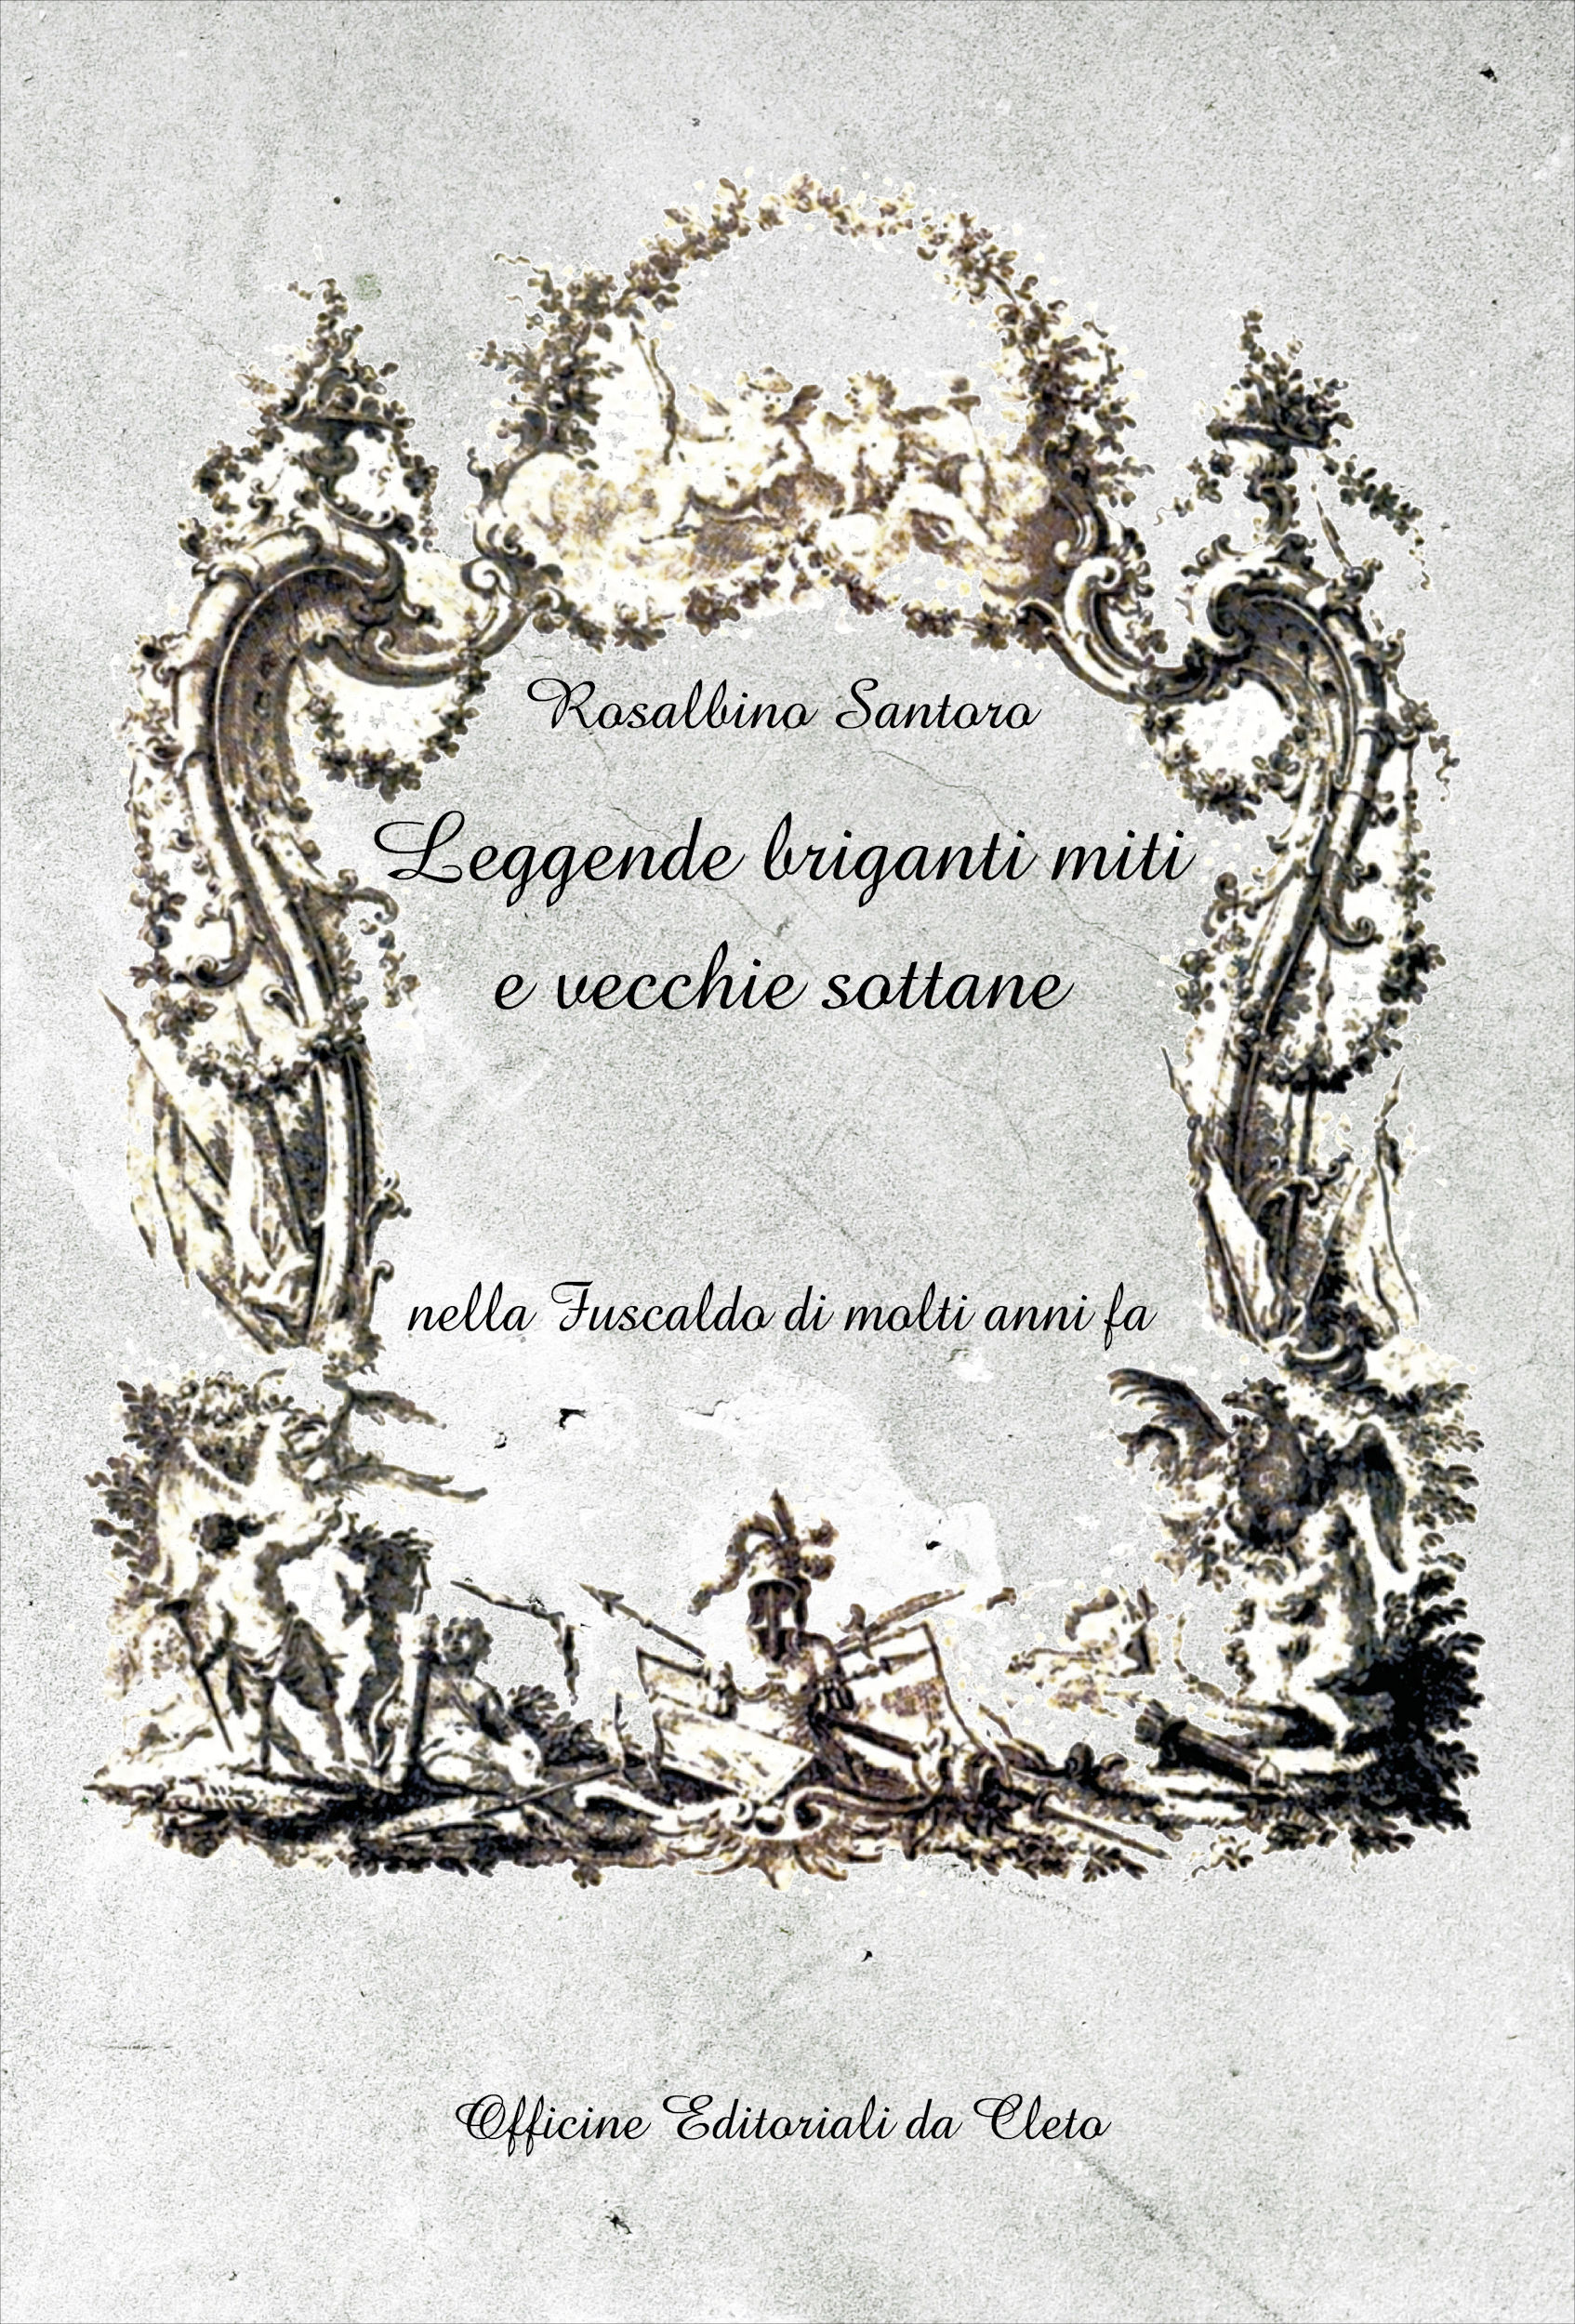 La copertina del libro di Rosalbino Santoro dal titolo Leggende briganti miti e vecchie sottane